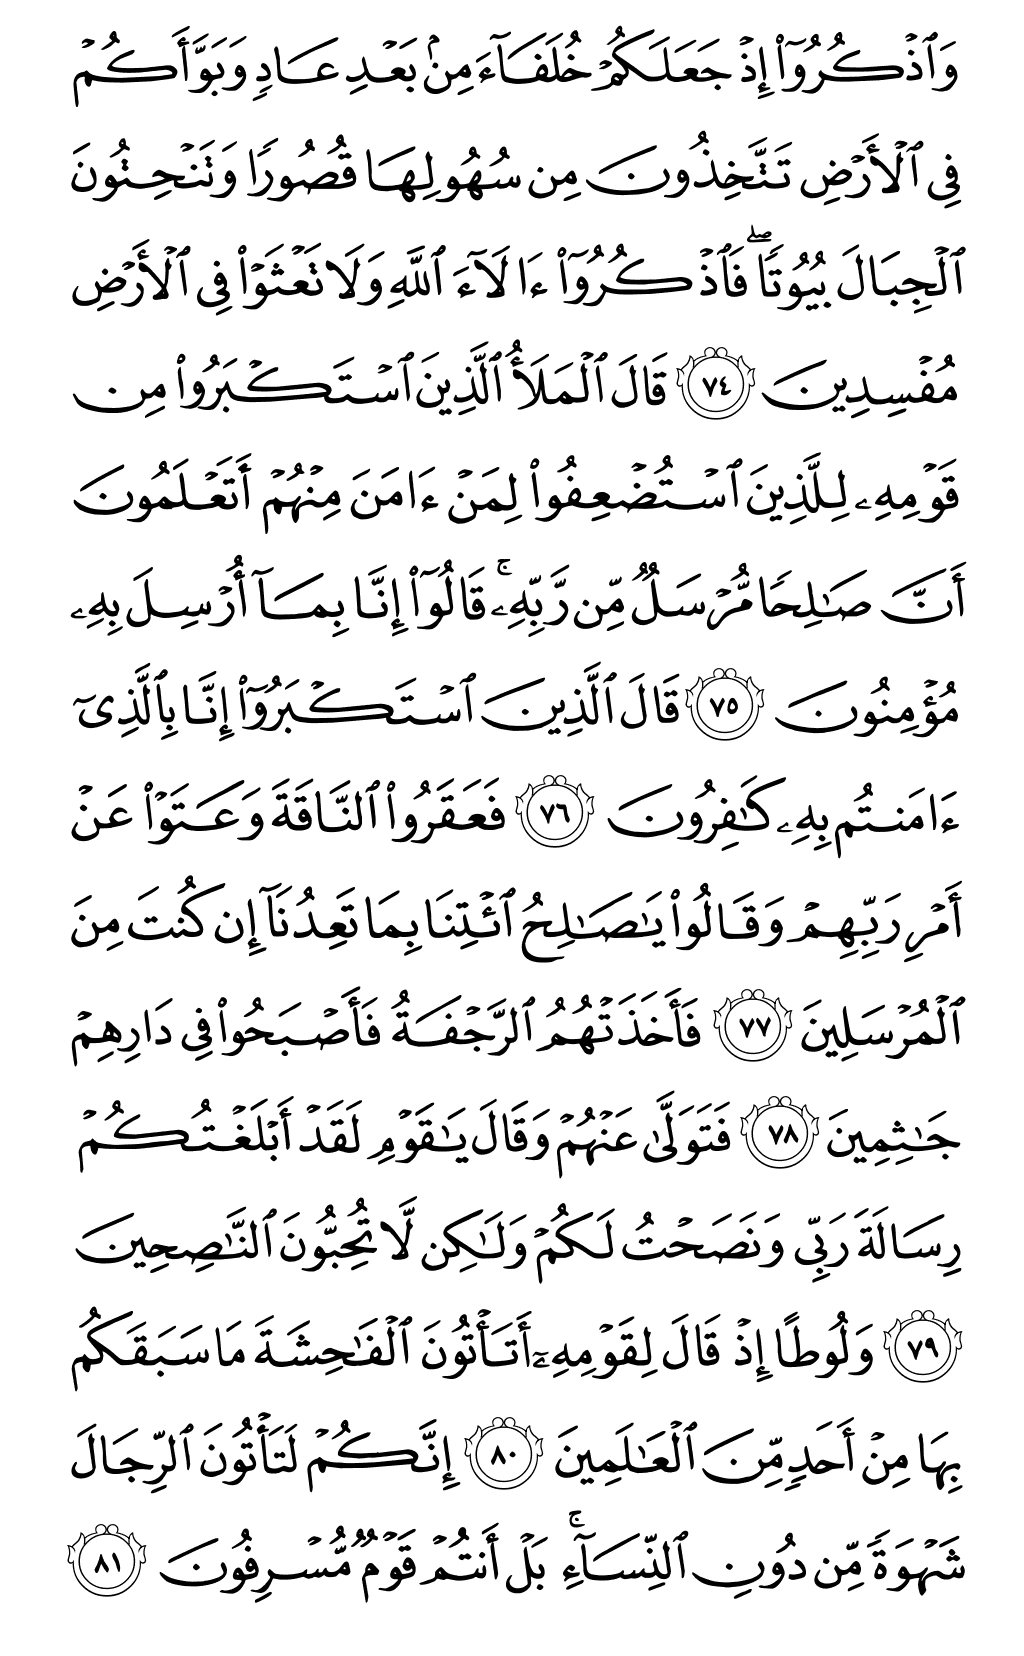 الصفحة رقم 160 من القرآن الكريم